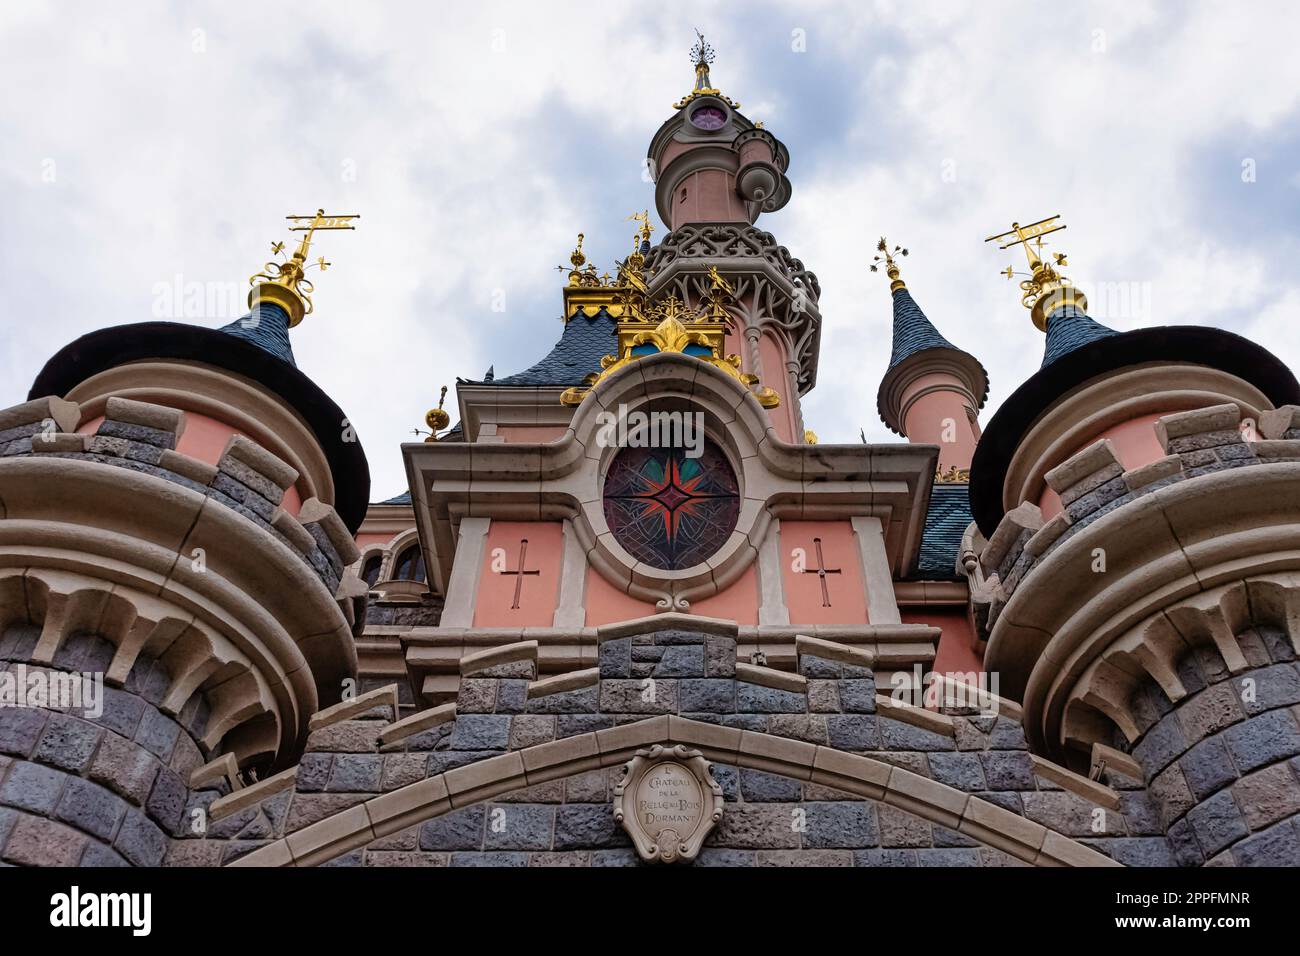 Castello della bella addormentata - Disneyland Paris, Chessy, Francia Foto Stock